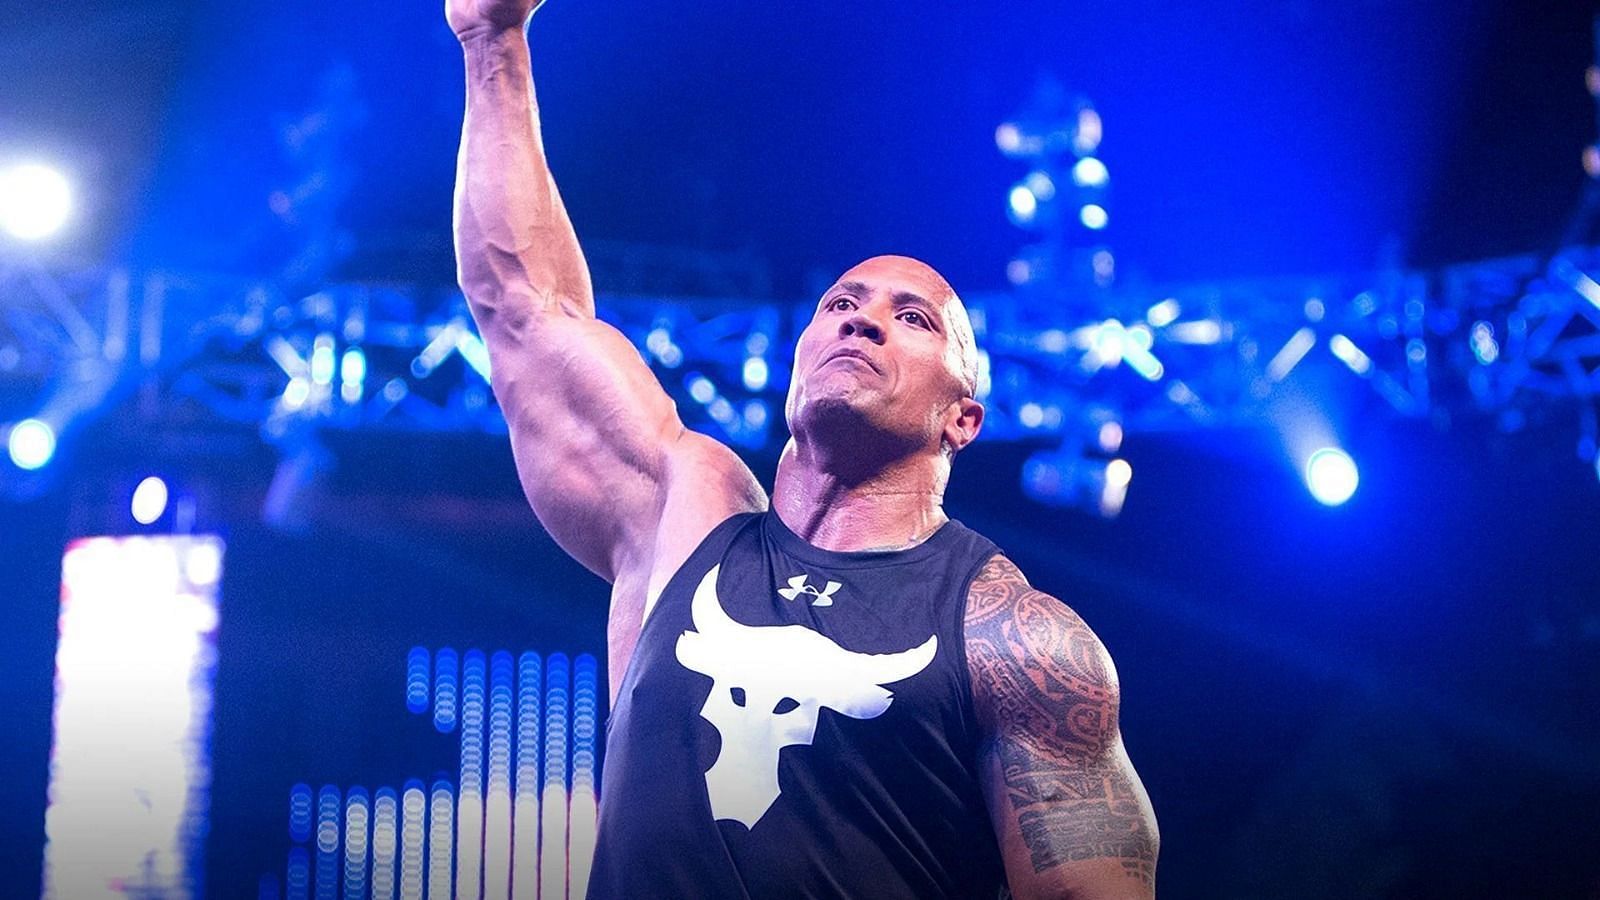 द रॉक ने हाल में ही WWE में वापसी की थी